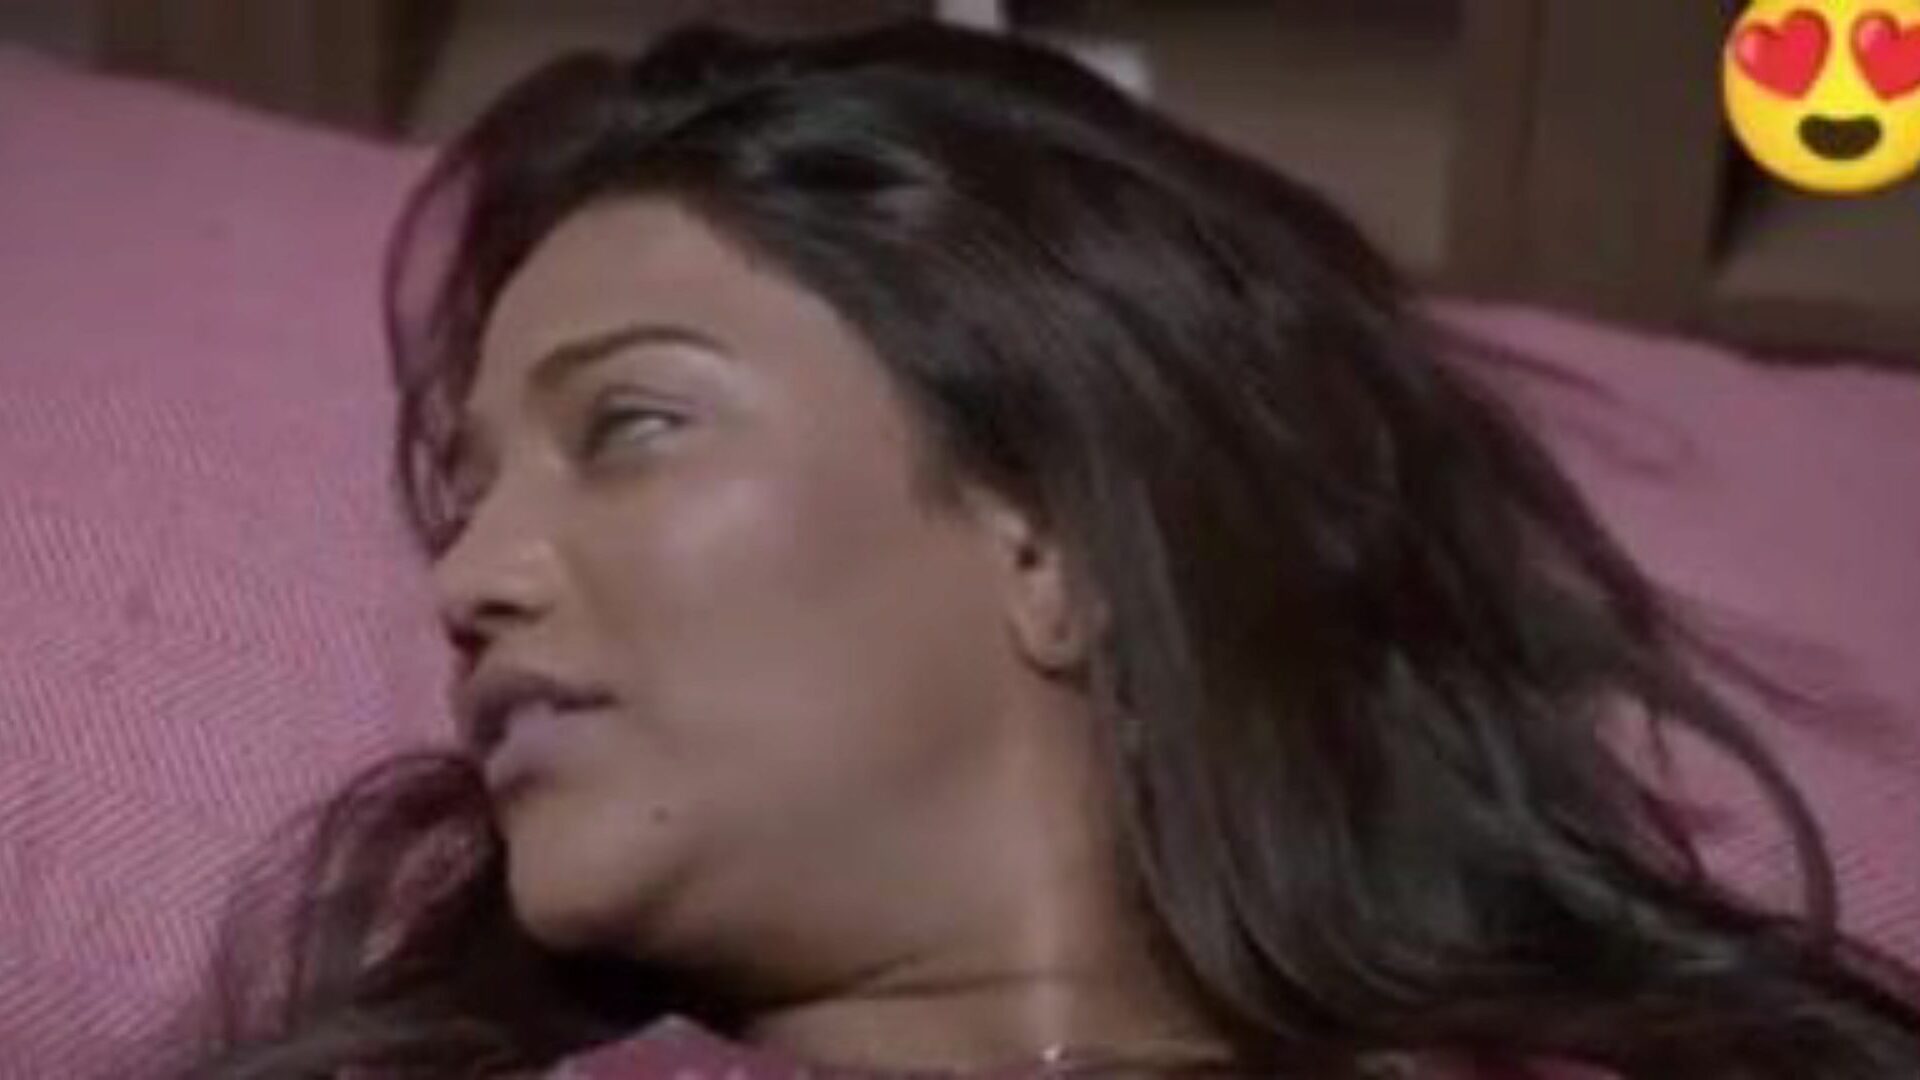 dvostruki dhamaka saree seks, besplatna indijska pornografija da: xhamster gledajte dvostruki dhamaka saree seks film na xhamsteru, masivnom web mjestu za seks s puno tona besplatnih indijskih novih seksualnih xxx i hindi pornografskih filmskih scena